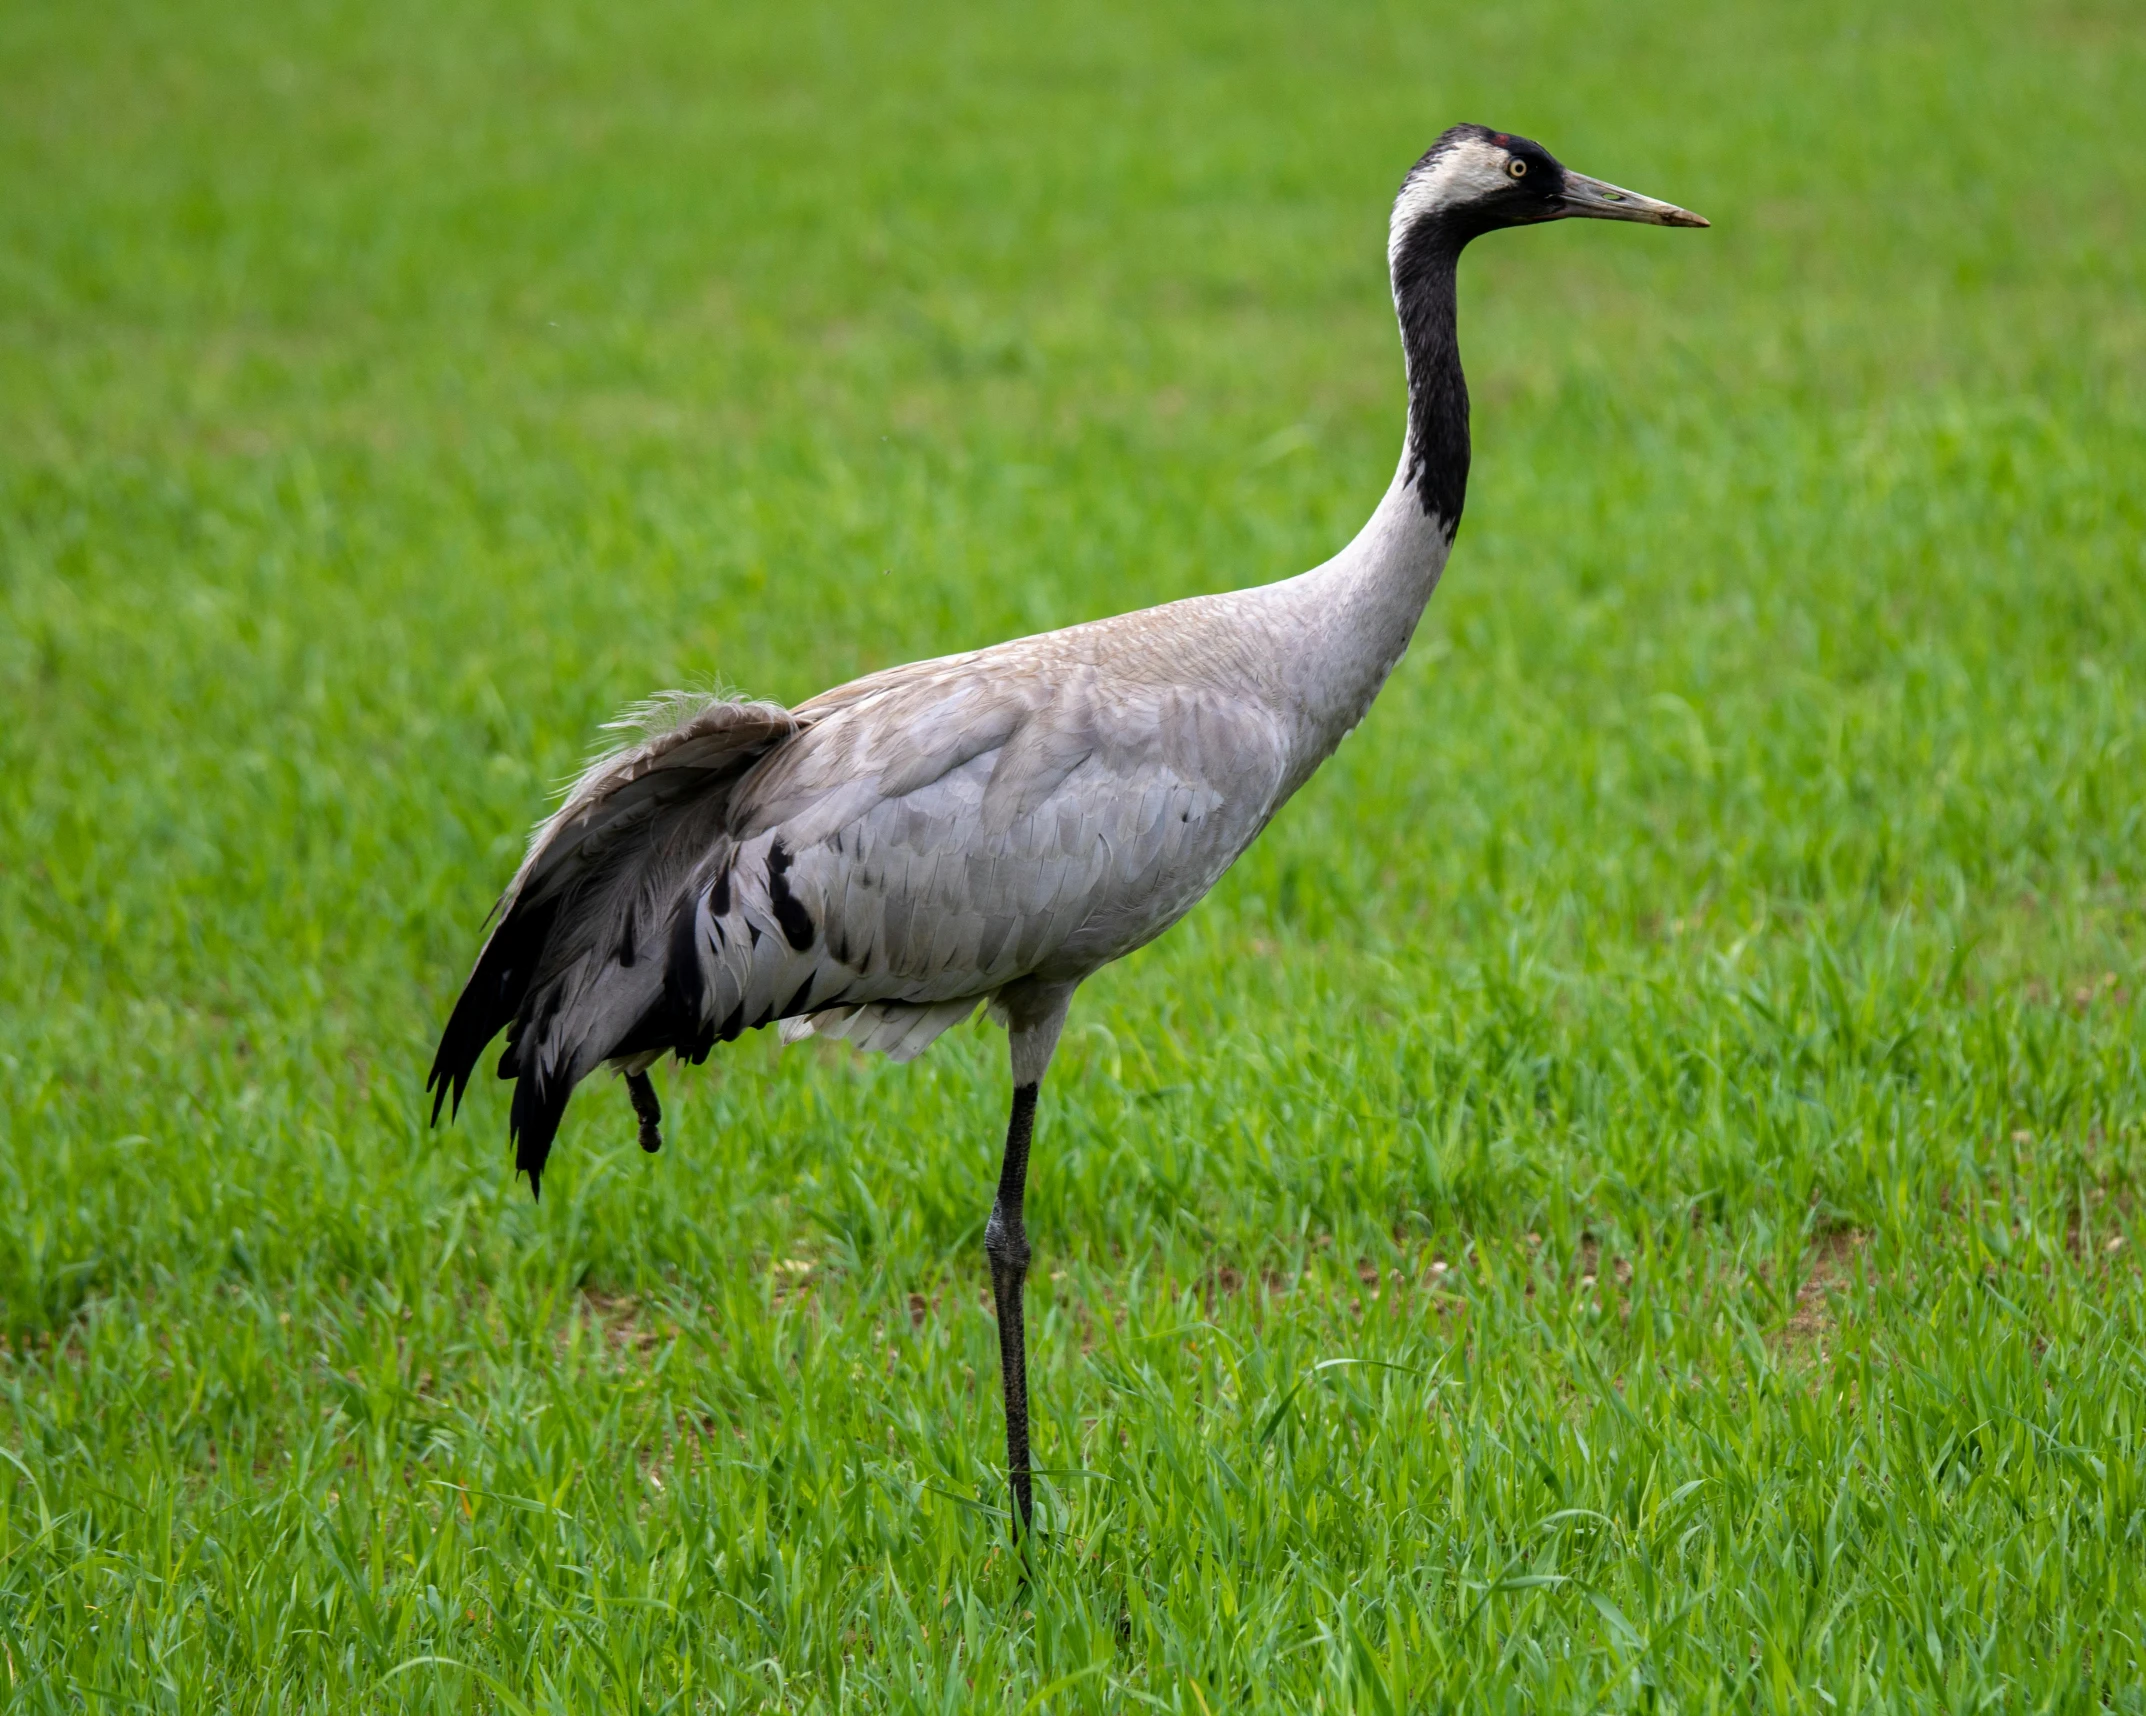 a grey bird standing in a green field